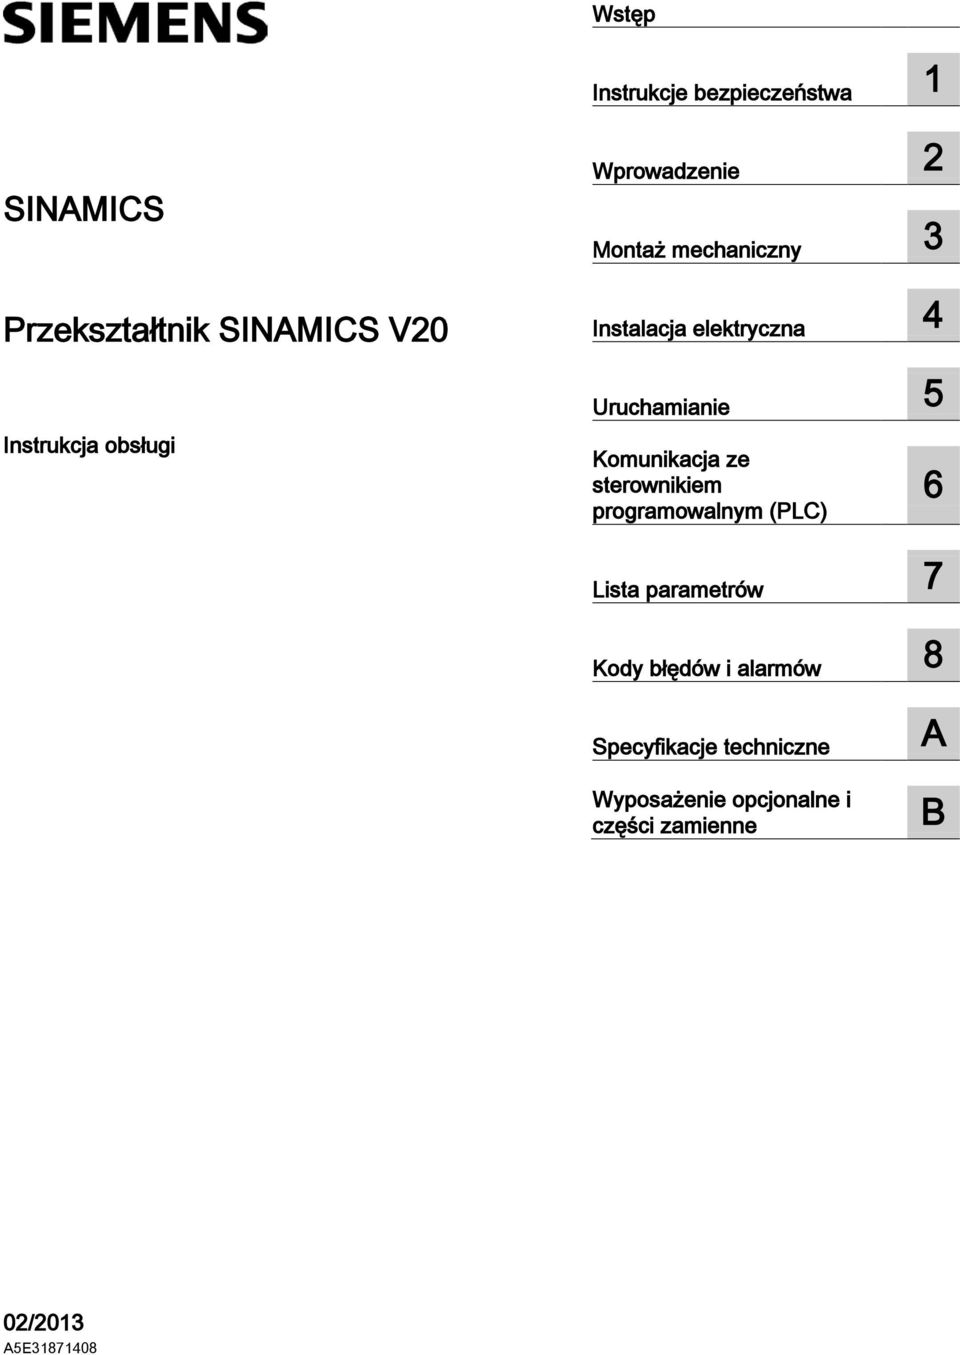 sterownikiem programowalnym (PLC) 6 Lista parametrów 7 Kody błędów i alarmów 8